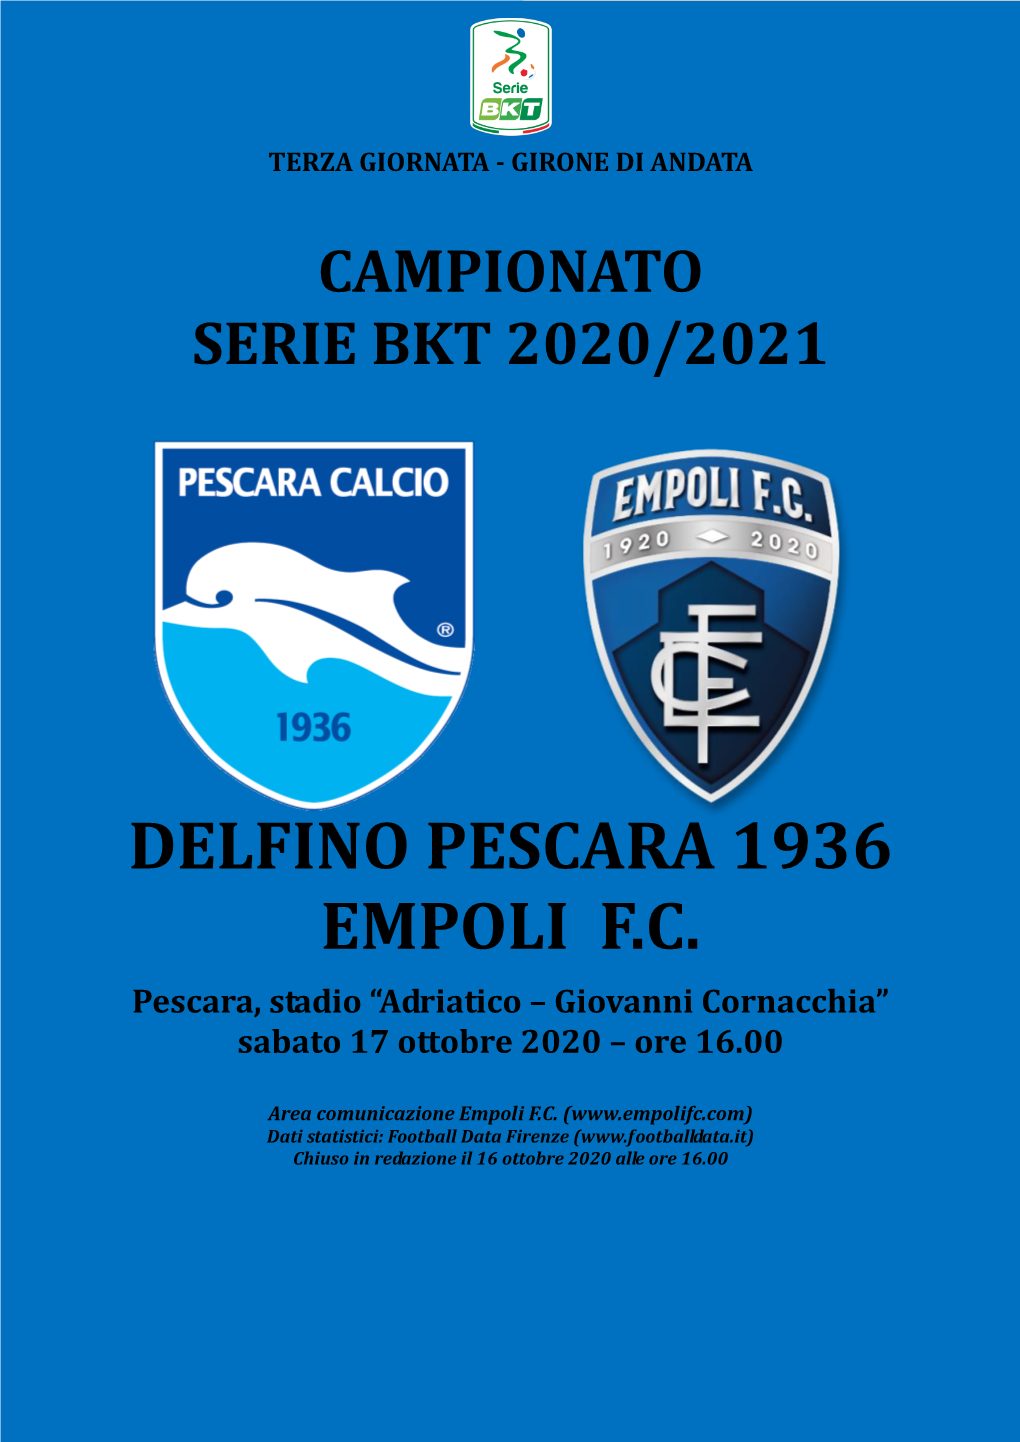 Delfino Pescara 1936 Empoli F.C